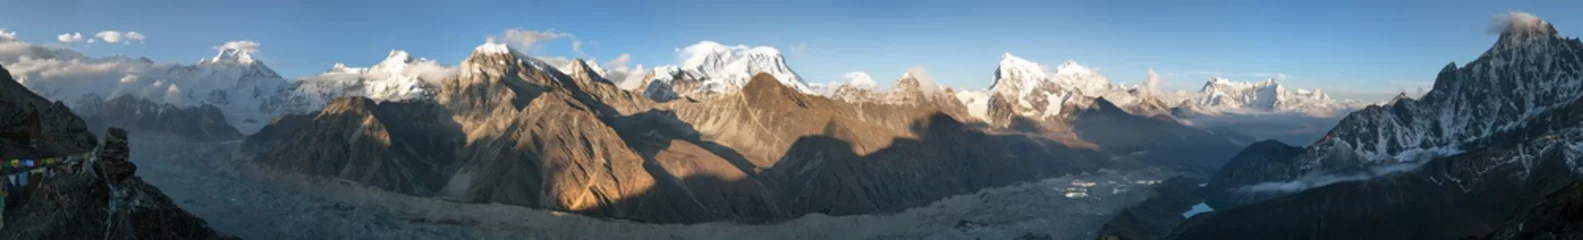 Cercles muraux Cho Oyu vue sur le mont Everest, le Lhotse, le Makalu et le Cho Oyu